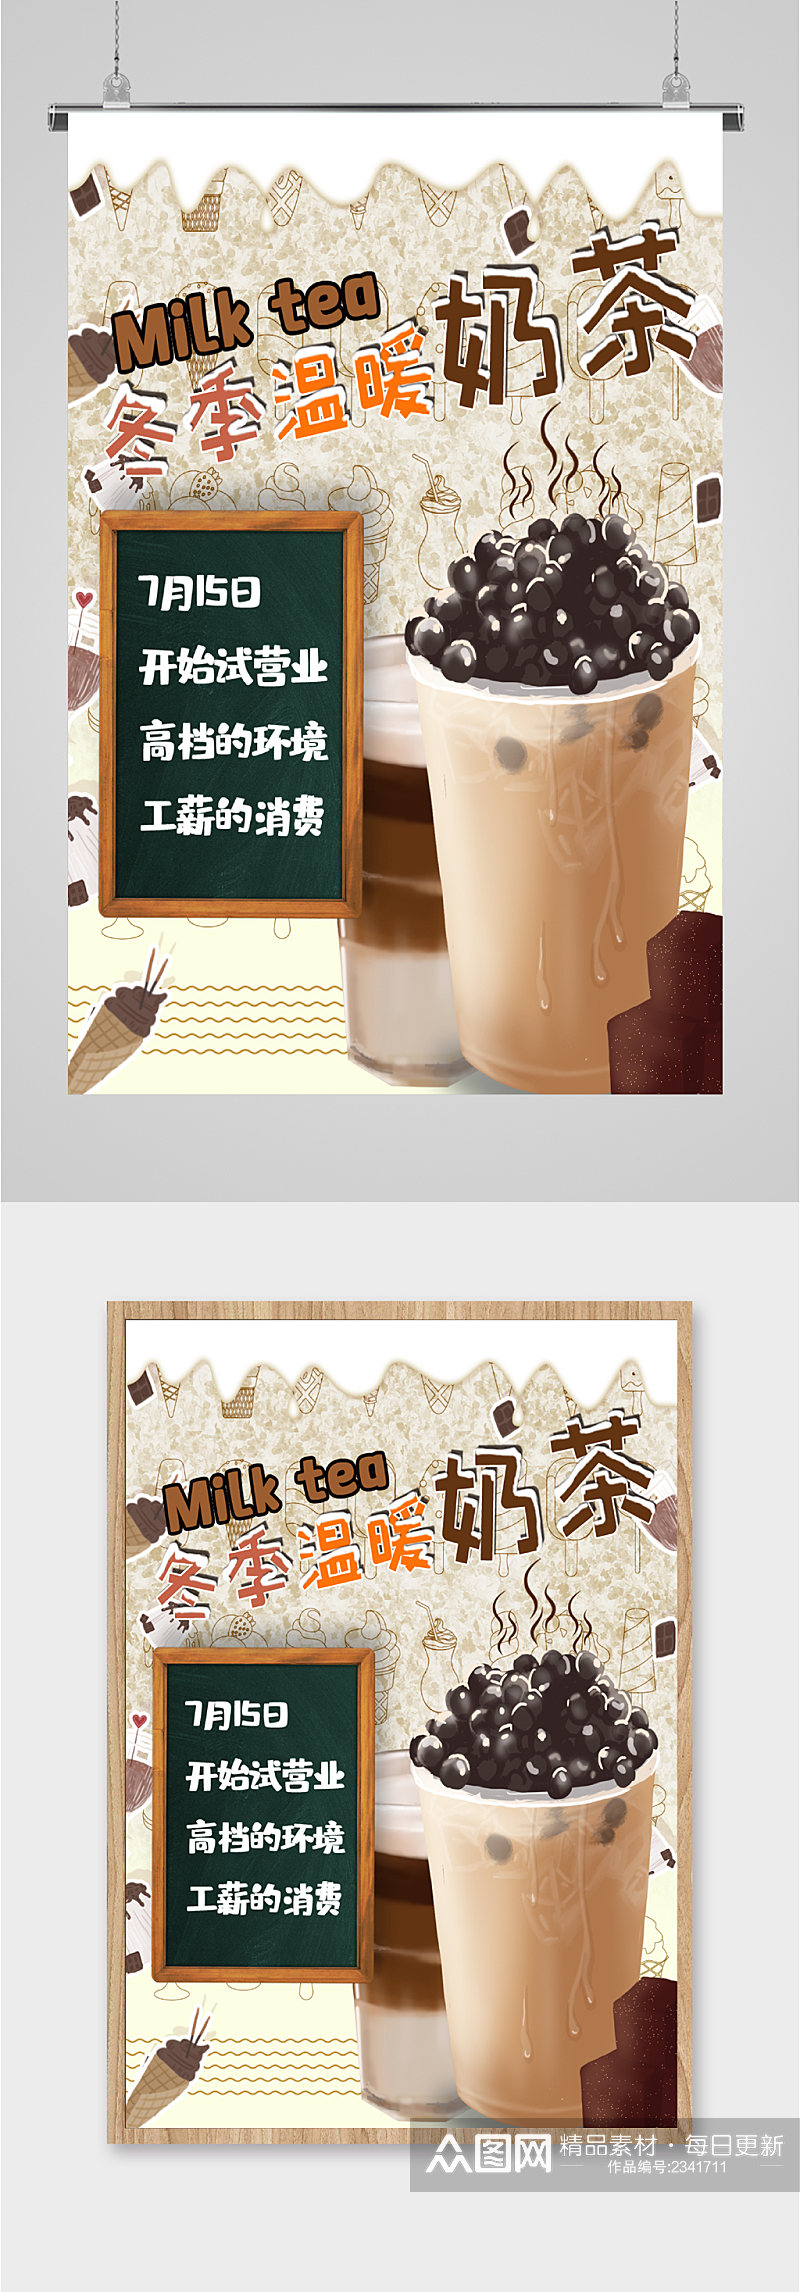 新品奶茶活动宣传海报素材